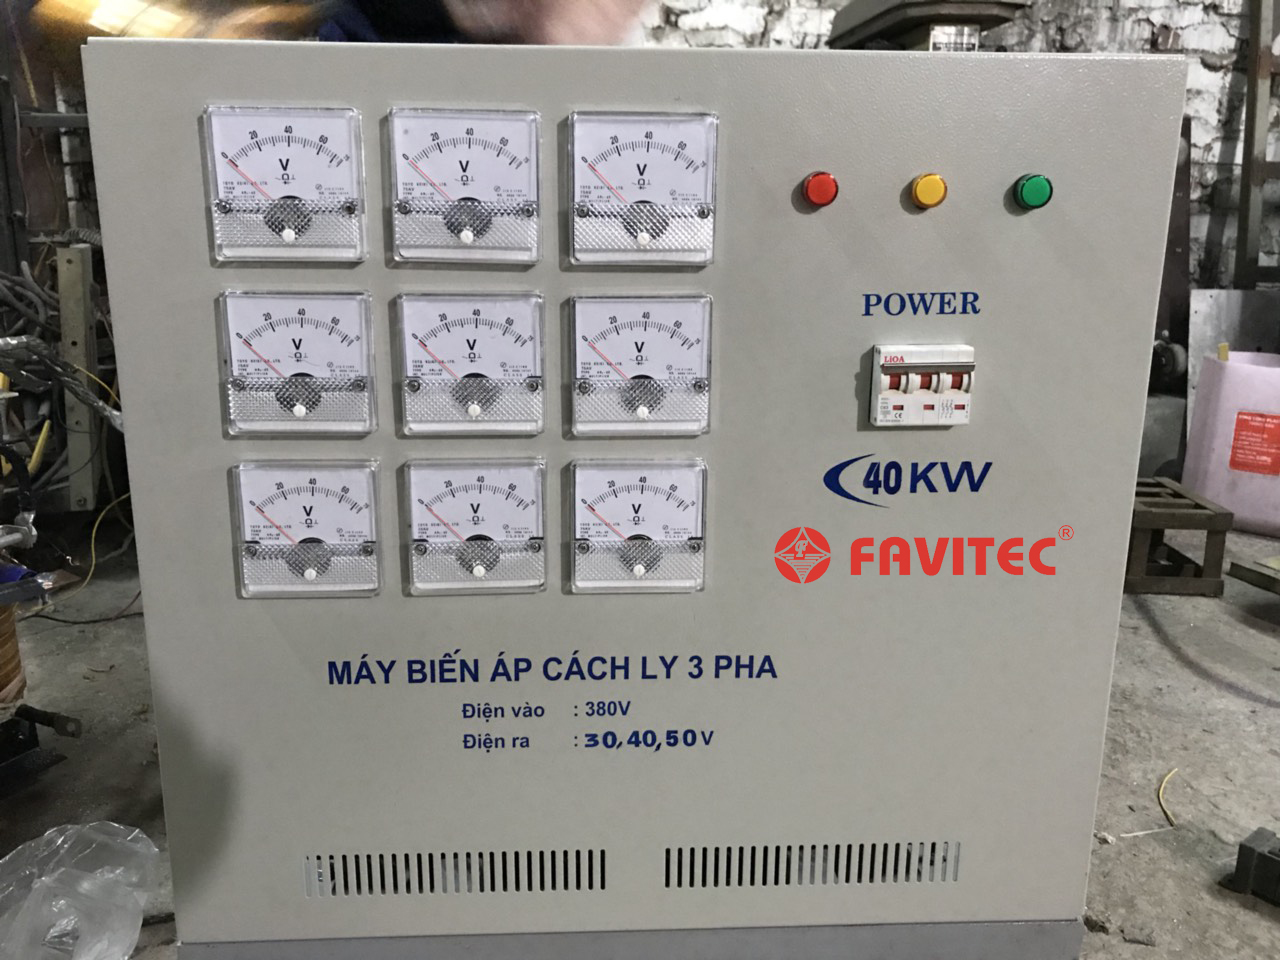 Các mẫu máy biến áp khô 3 pha uy tín - chất lượng tại Favitec